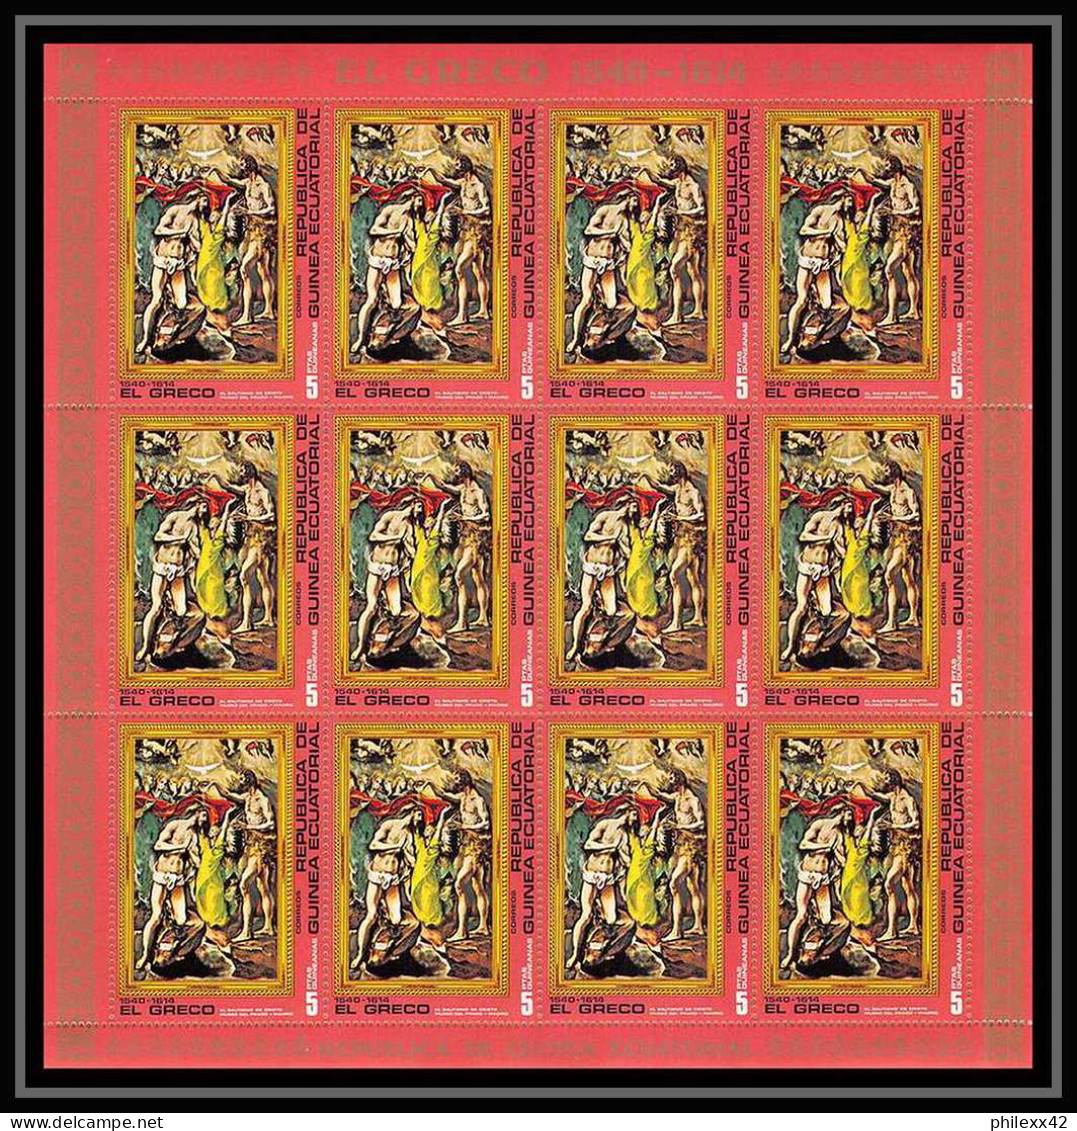 60002 Neuf ** MNH N°813/819 El Greco Tableau Painting 1976 Guinée équatoriale Guinea Feuilles Sheets - Religión